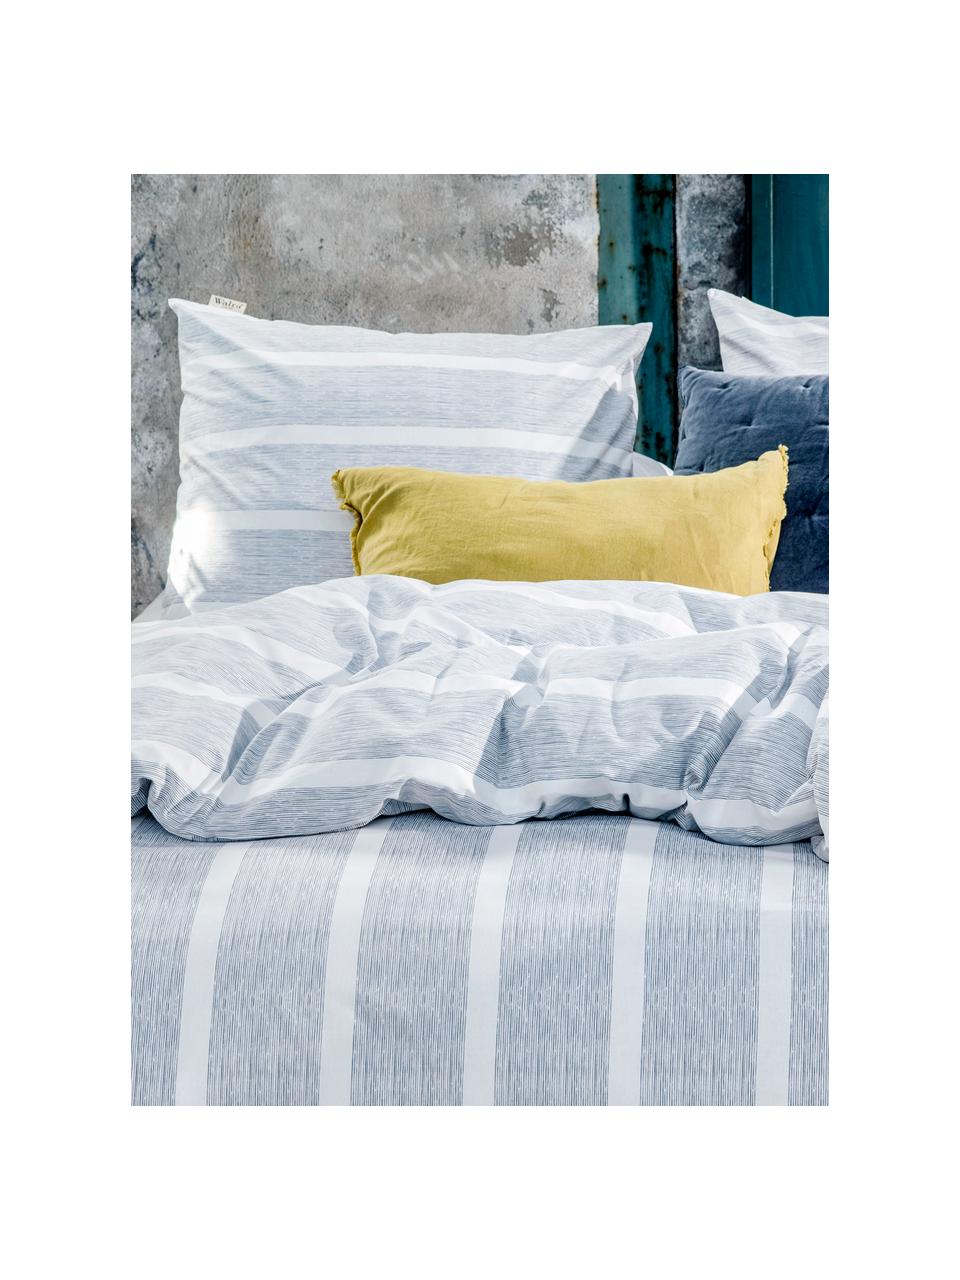 Gestreifte Baumwoll-Bettwäsche Stripe Along, Webart: Renforcé Renforcé besteht, Blau, Weiß, 135 x 200 cm + 1 Kissen 80 x 80 cm